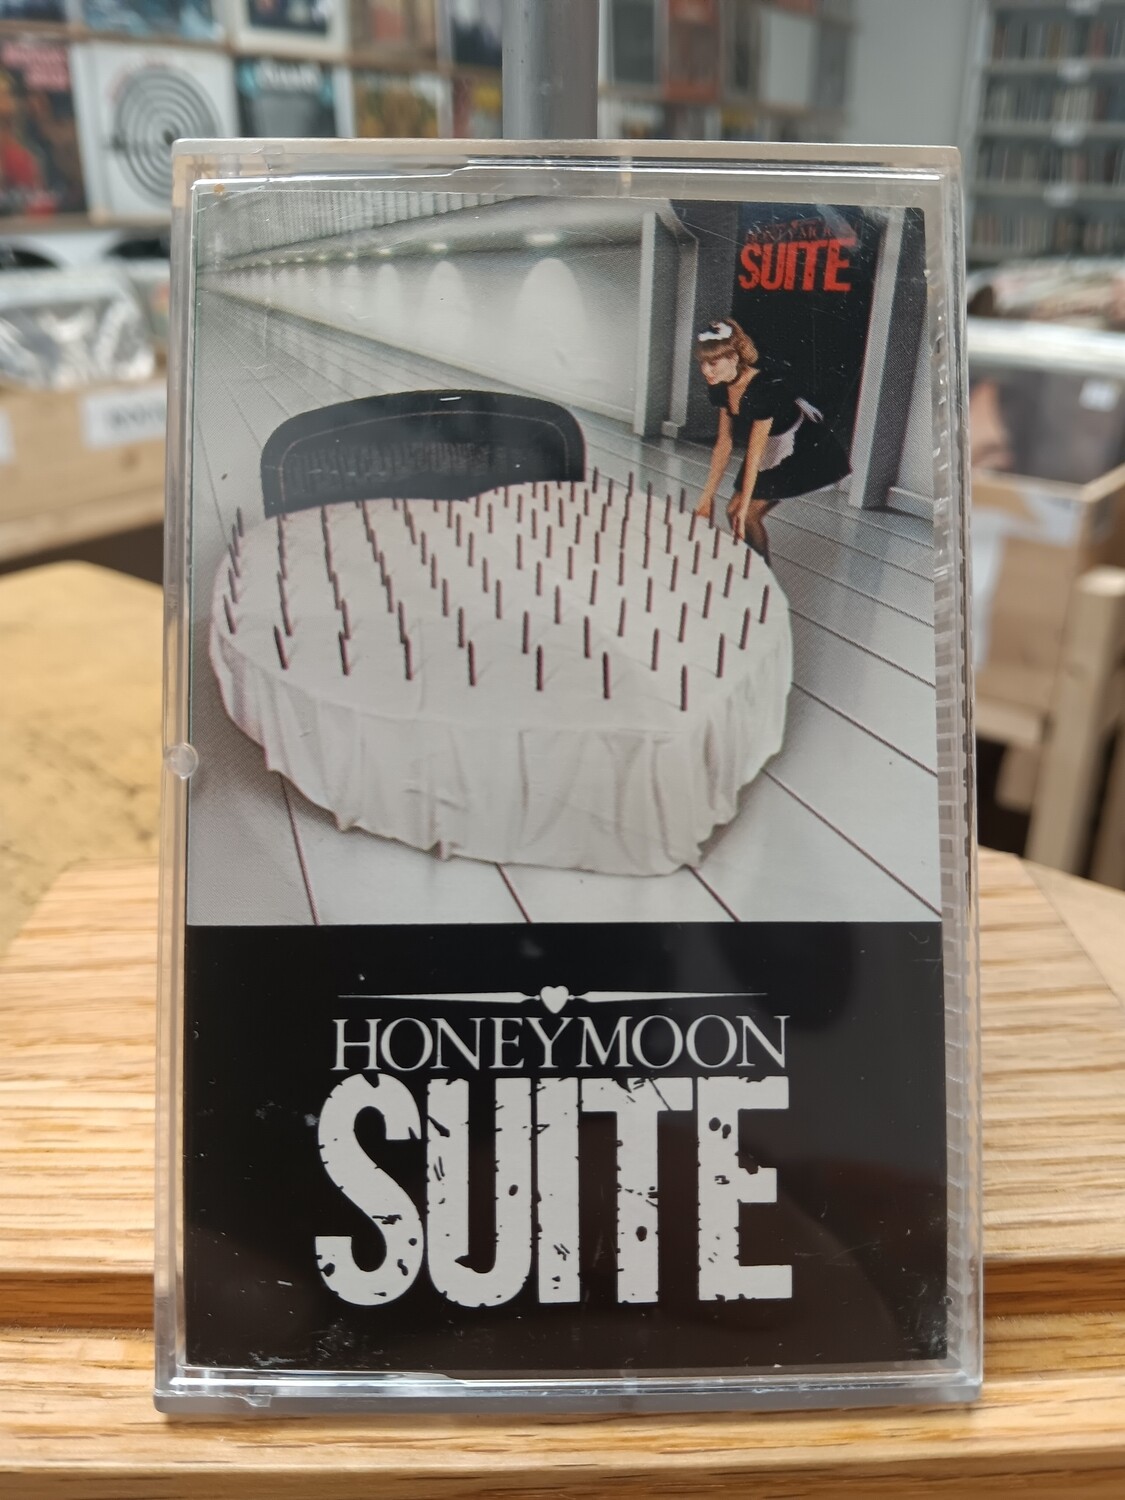 HONEYMOON SUITE - Honeymoon suite (CASSETTE)